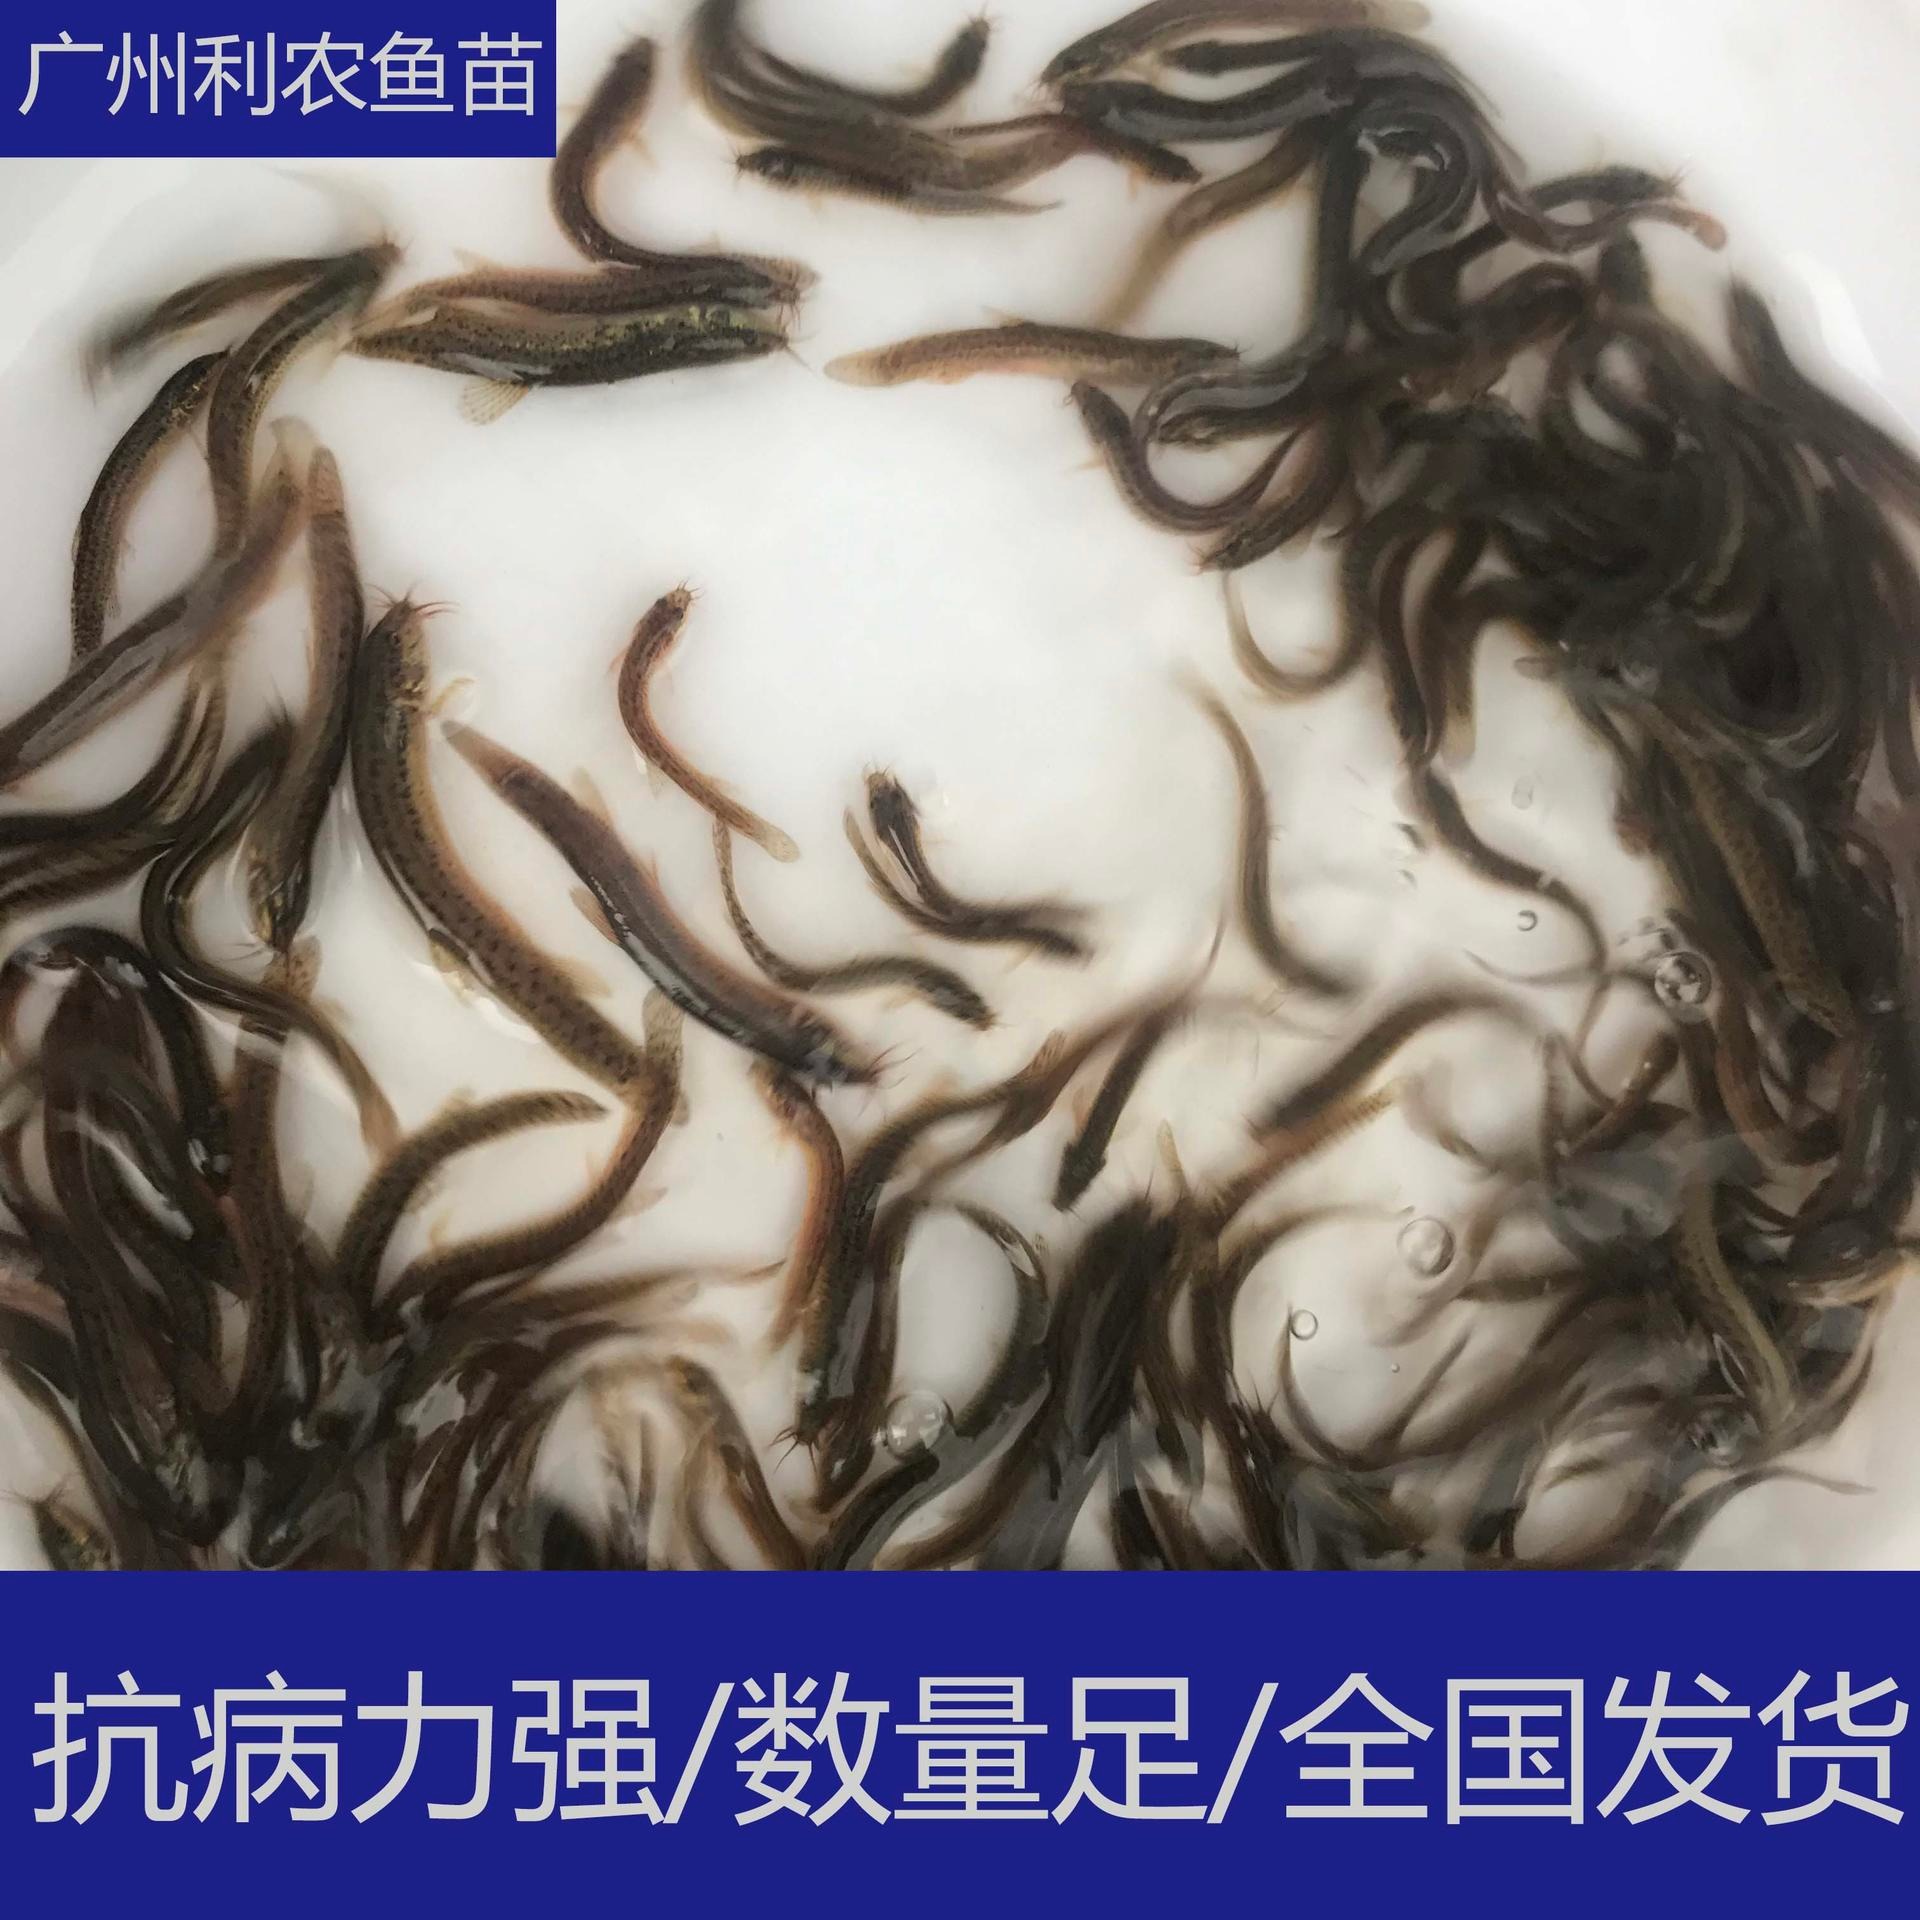 技术指导 贵州贵阳台湾泥鳅苗出售 3-5cm泥鳅鱼苗养殖场